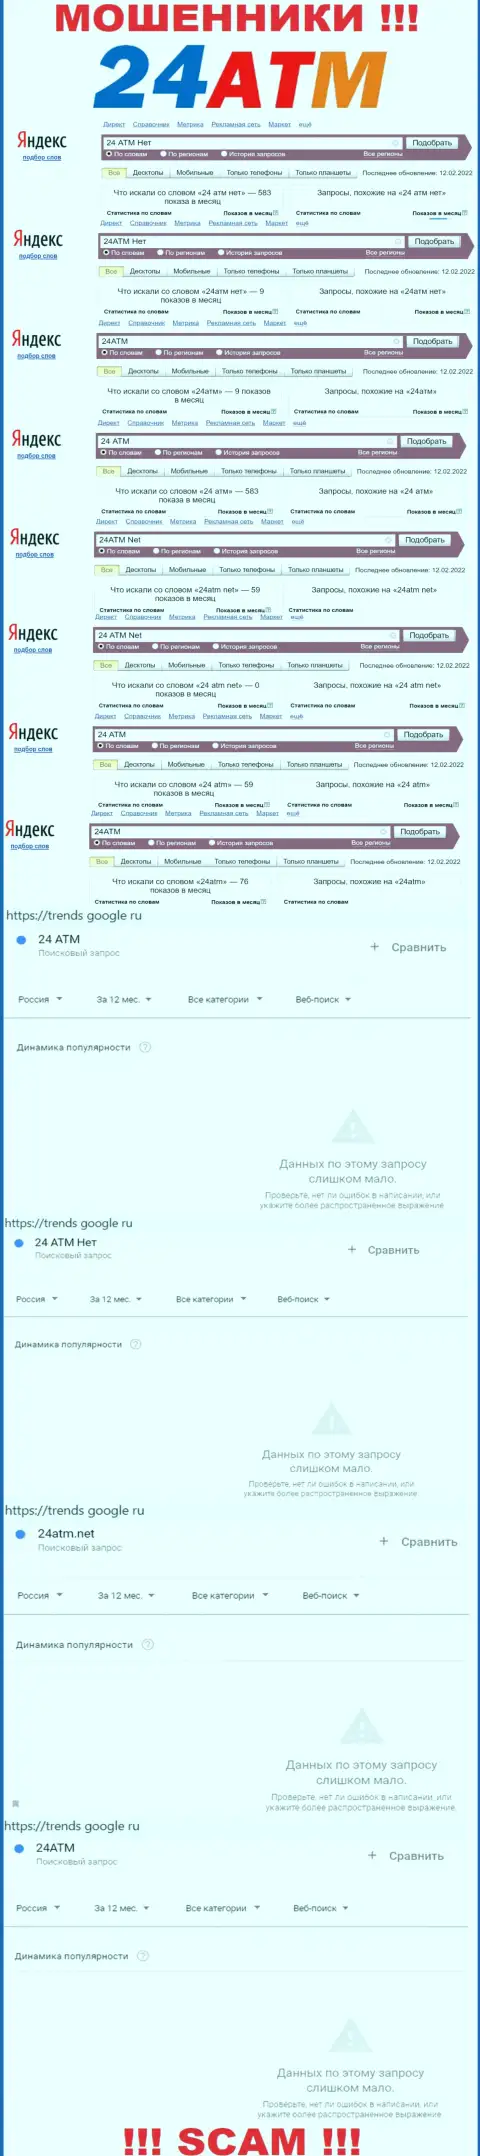 Количество поисковых запросов в поисковиках всемирной сети internet по бренду мошенников 24АТМ Нет